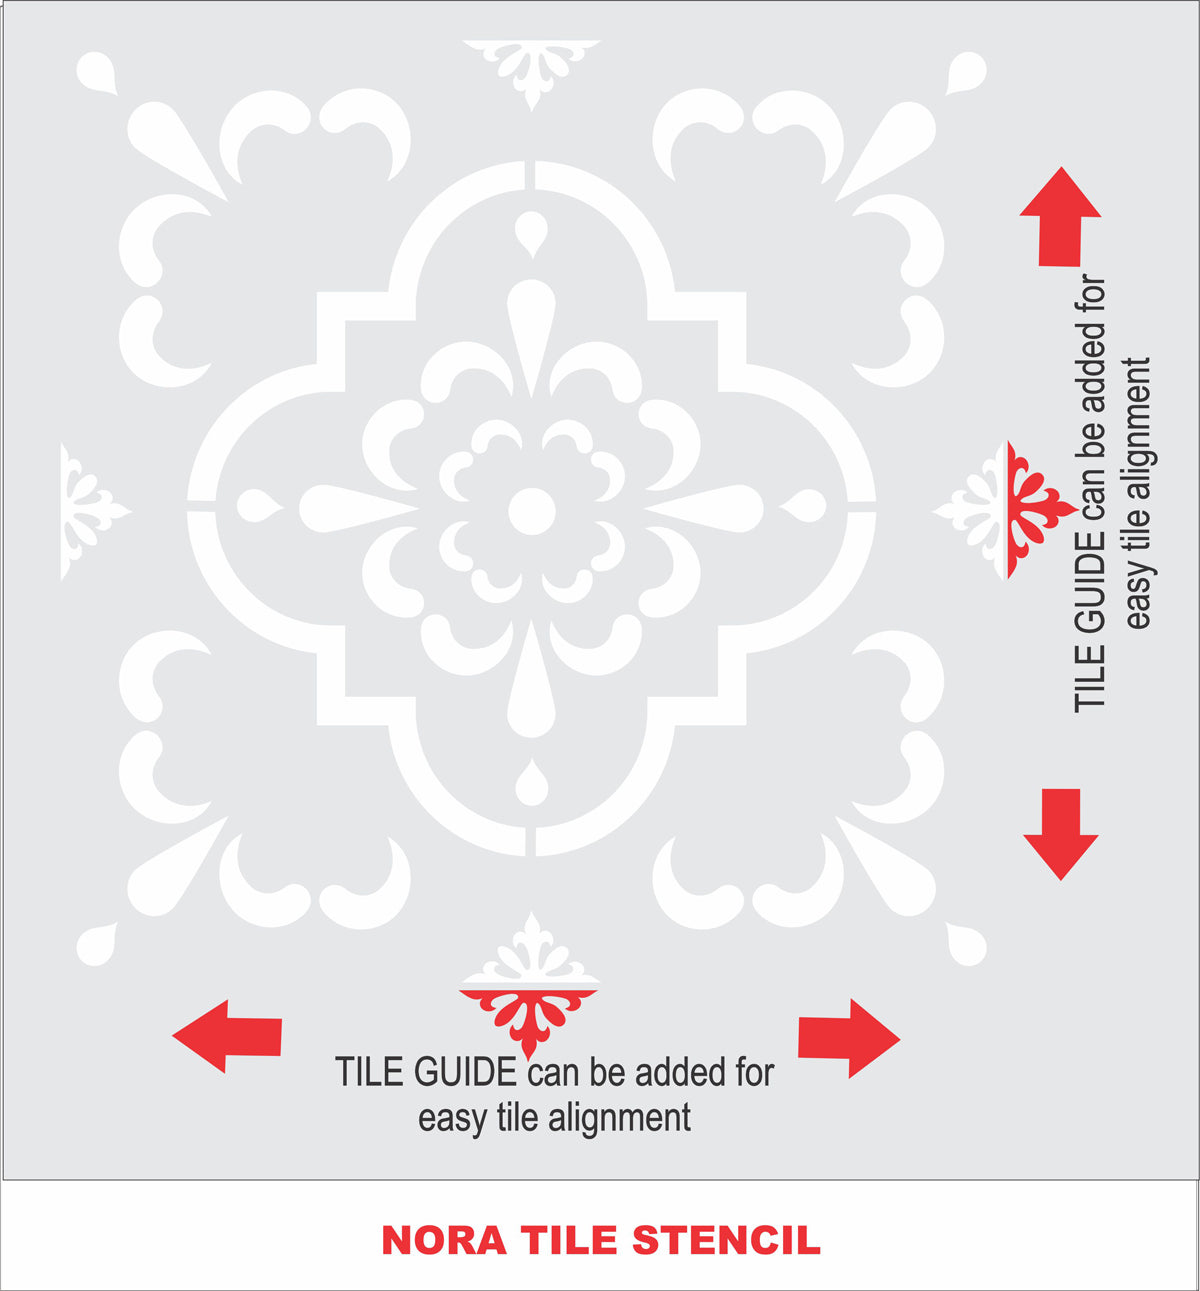 NORA Tile Stencil - Floor Stencils - Backsplash Stencils - Fireplace Stencils - Reusable Stencil - 15 sizes - Wall Stencils